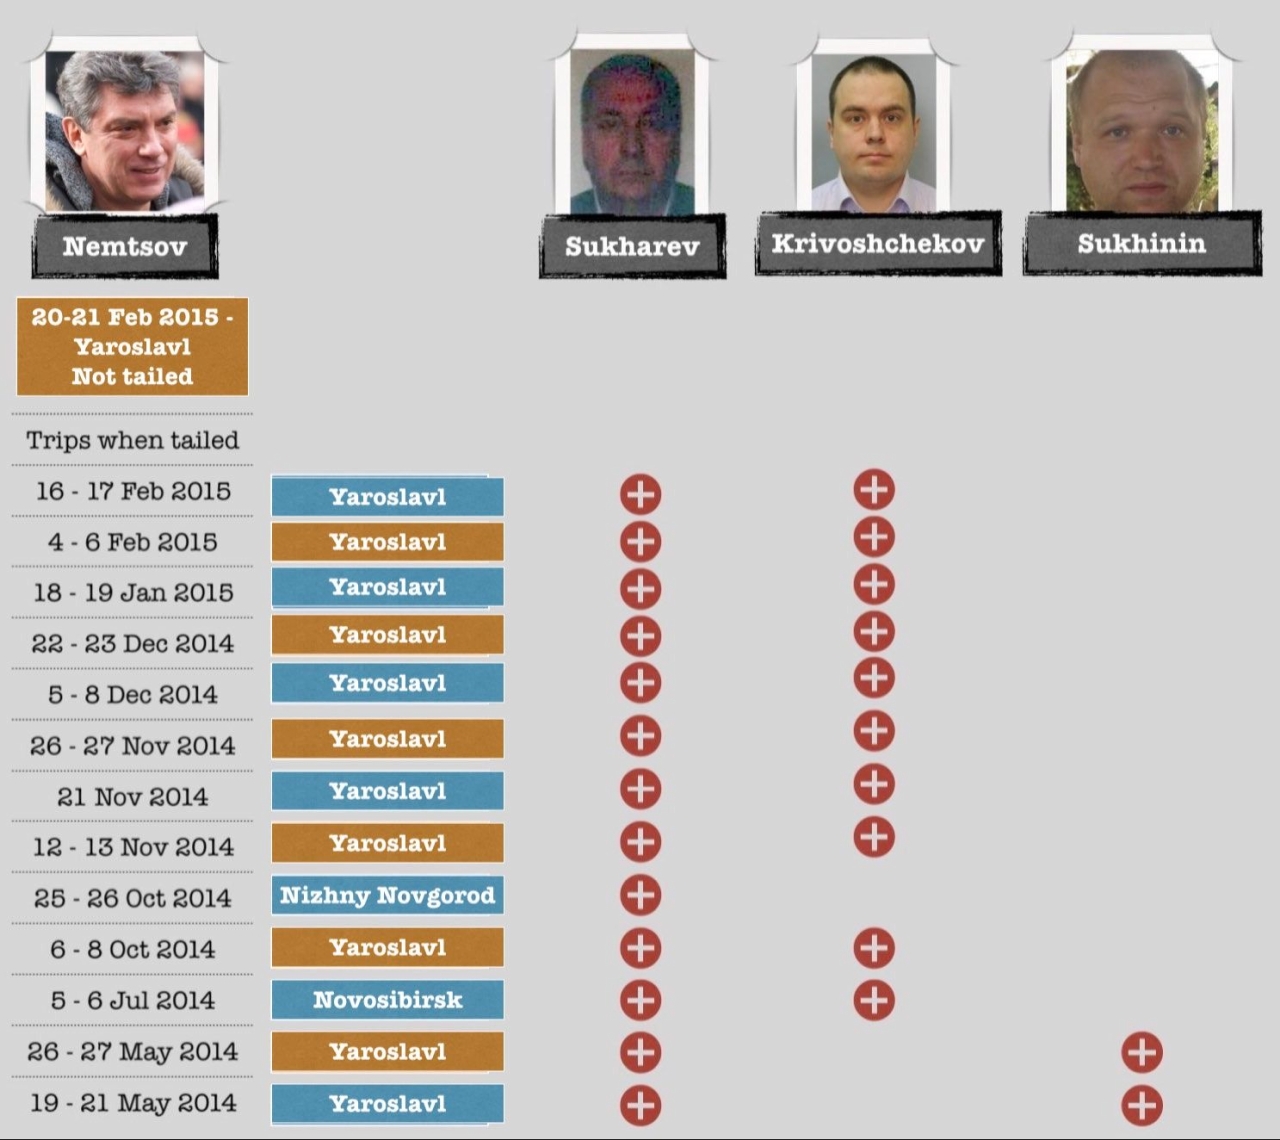 Расследование: перед убийством за Немцовым следили сотрудники ФСБ, которые отравили Навального